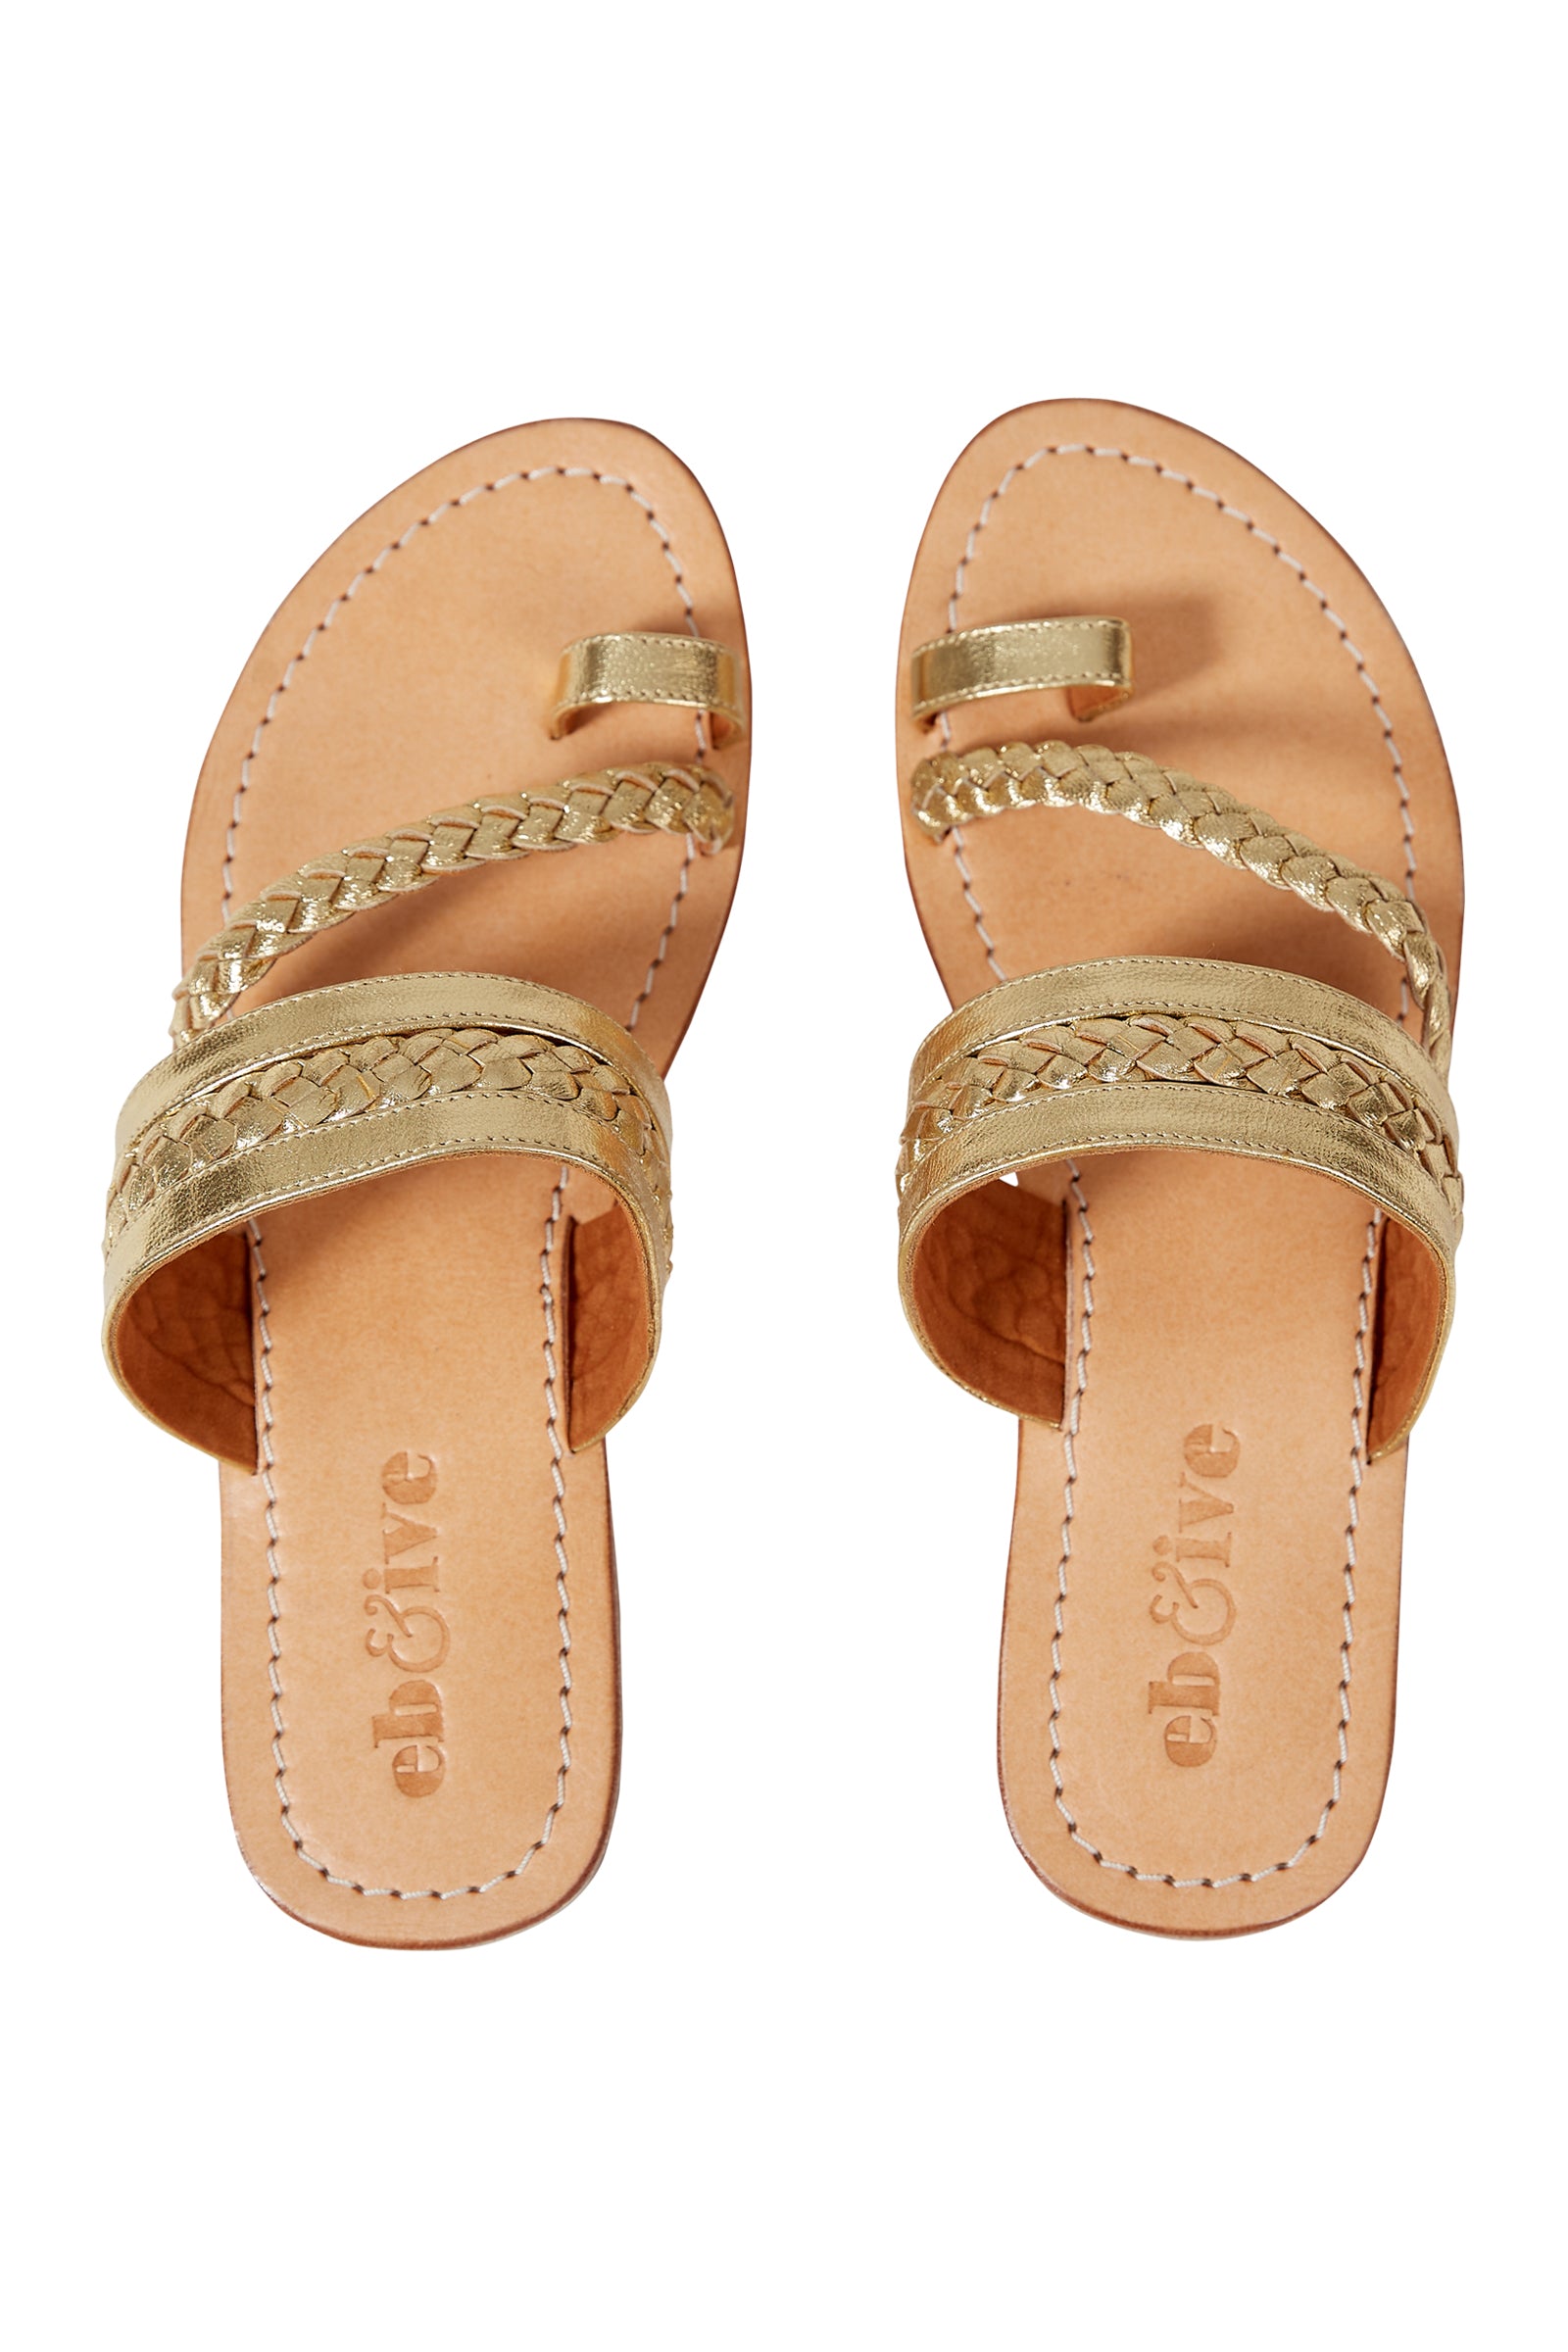 Verve Sandal - Gold - eb&ive Footwear - Sandals